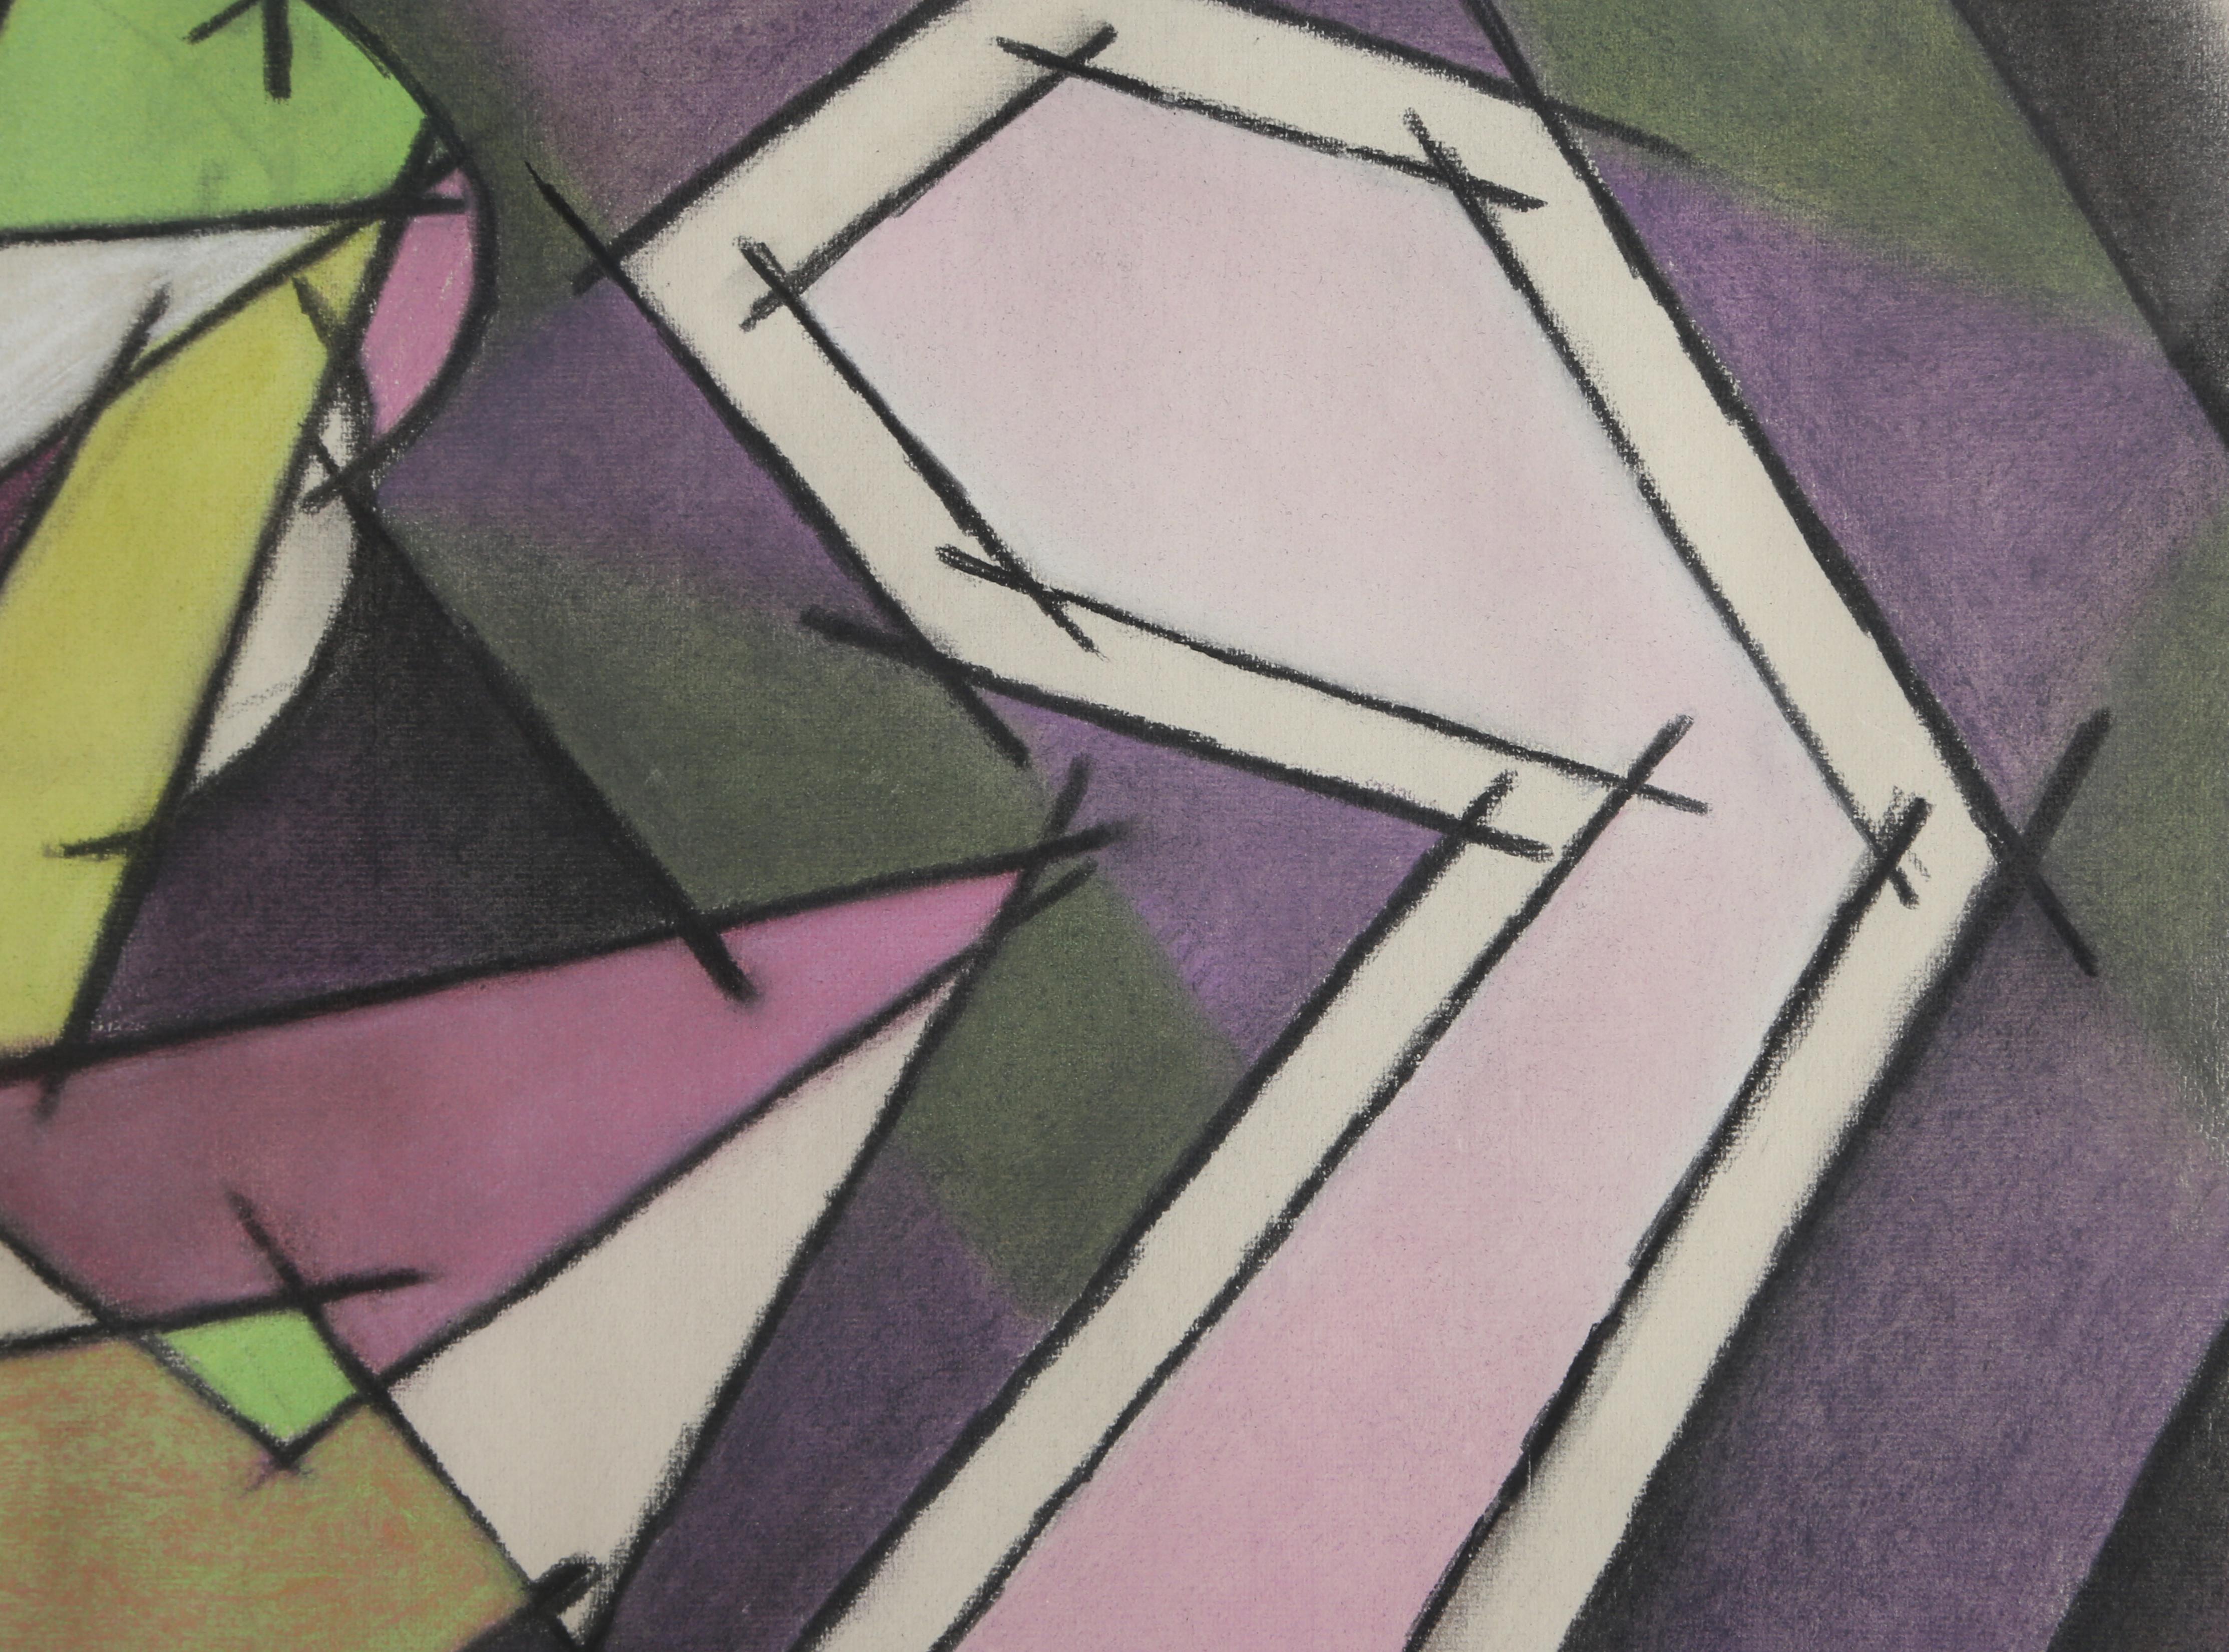 Kubistisches Stillleben mit grauer, grüner und violetter Zeichnung von Benjamin Benno, 1953 (Kubismus), Art, von Benjamin G. Benno